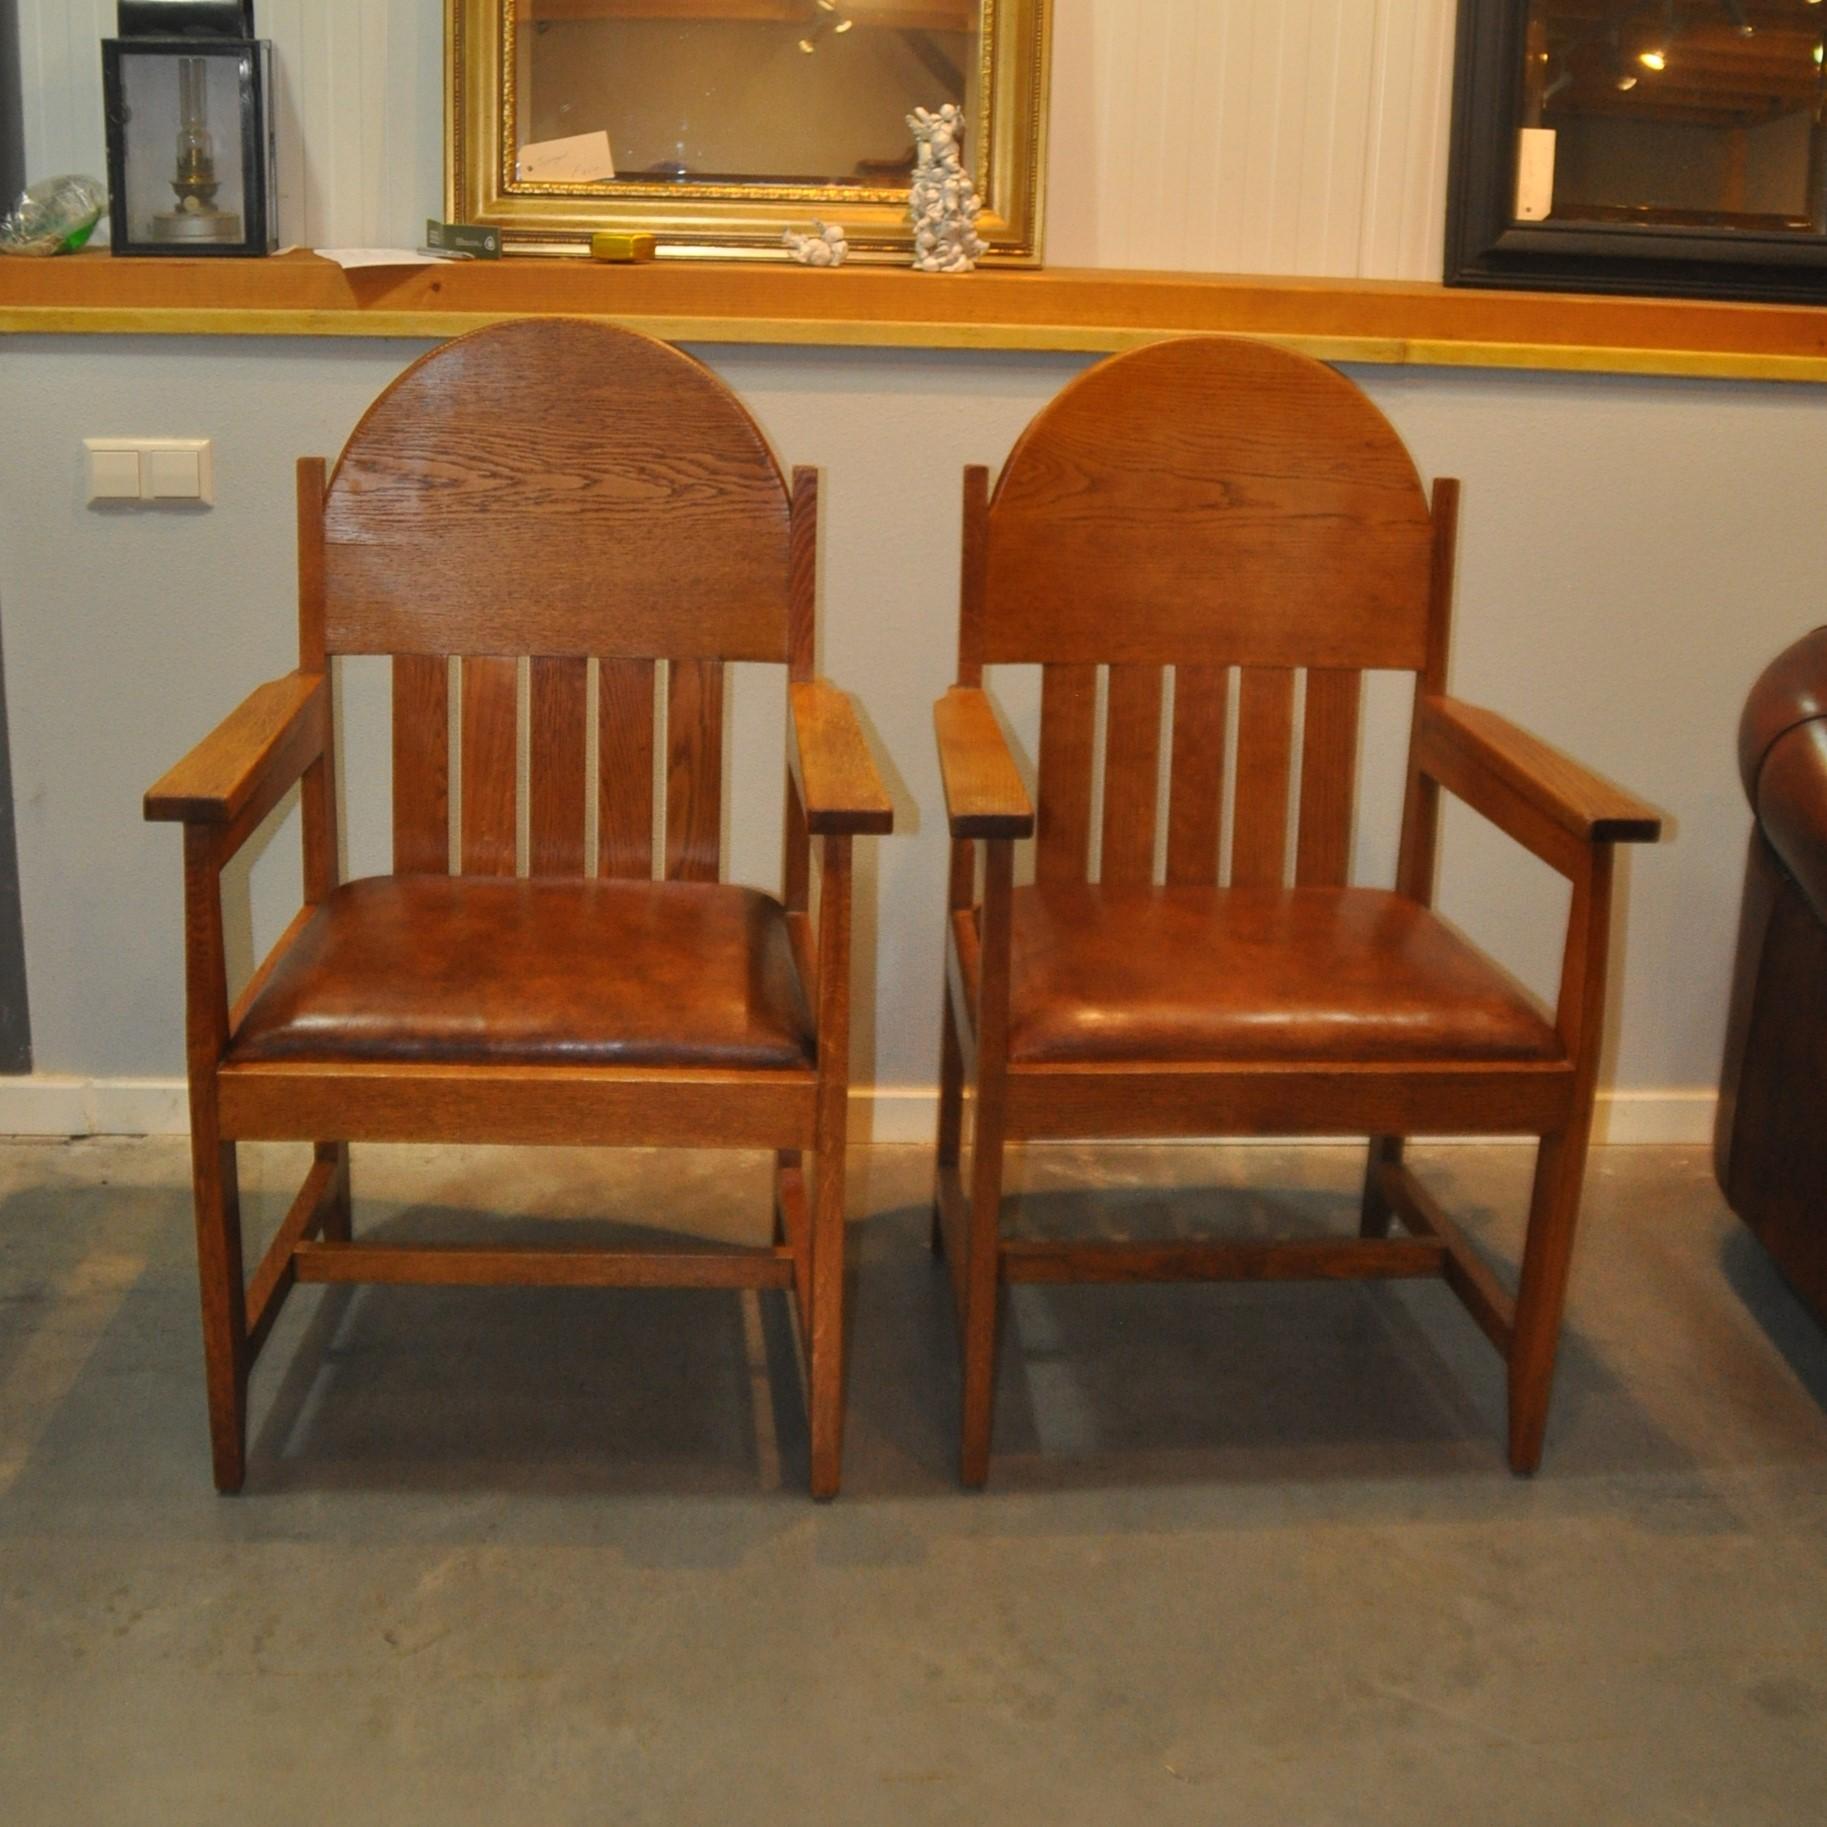 Sesselset des Möbeldesigners Hendrik Wouda. Die Sitze sind mit Schafsleder gepolstert.
Diese Stühle wurden von Wouda entworfen und zwischen 1930 und 1933 von Pander & Zn. in den Niederlanden hergestellt. Diese Stühle befinden sich auch in der